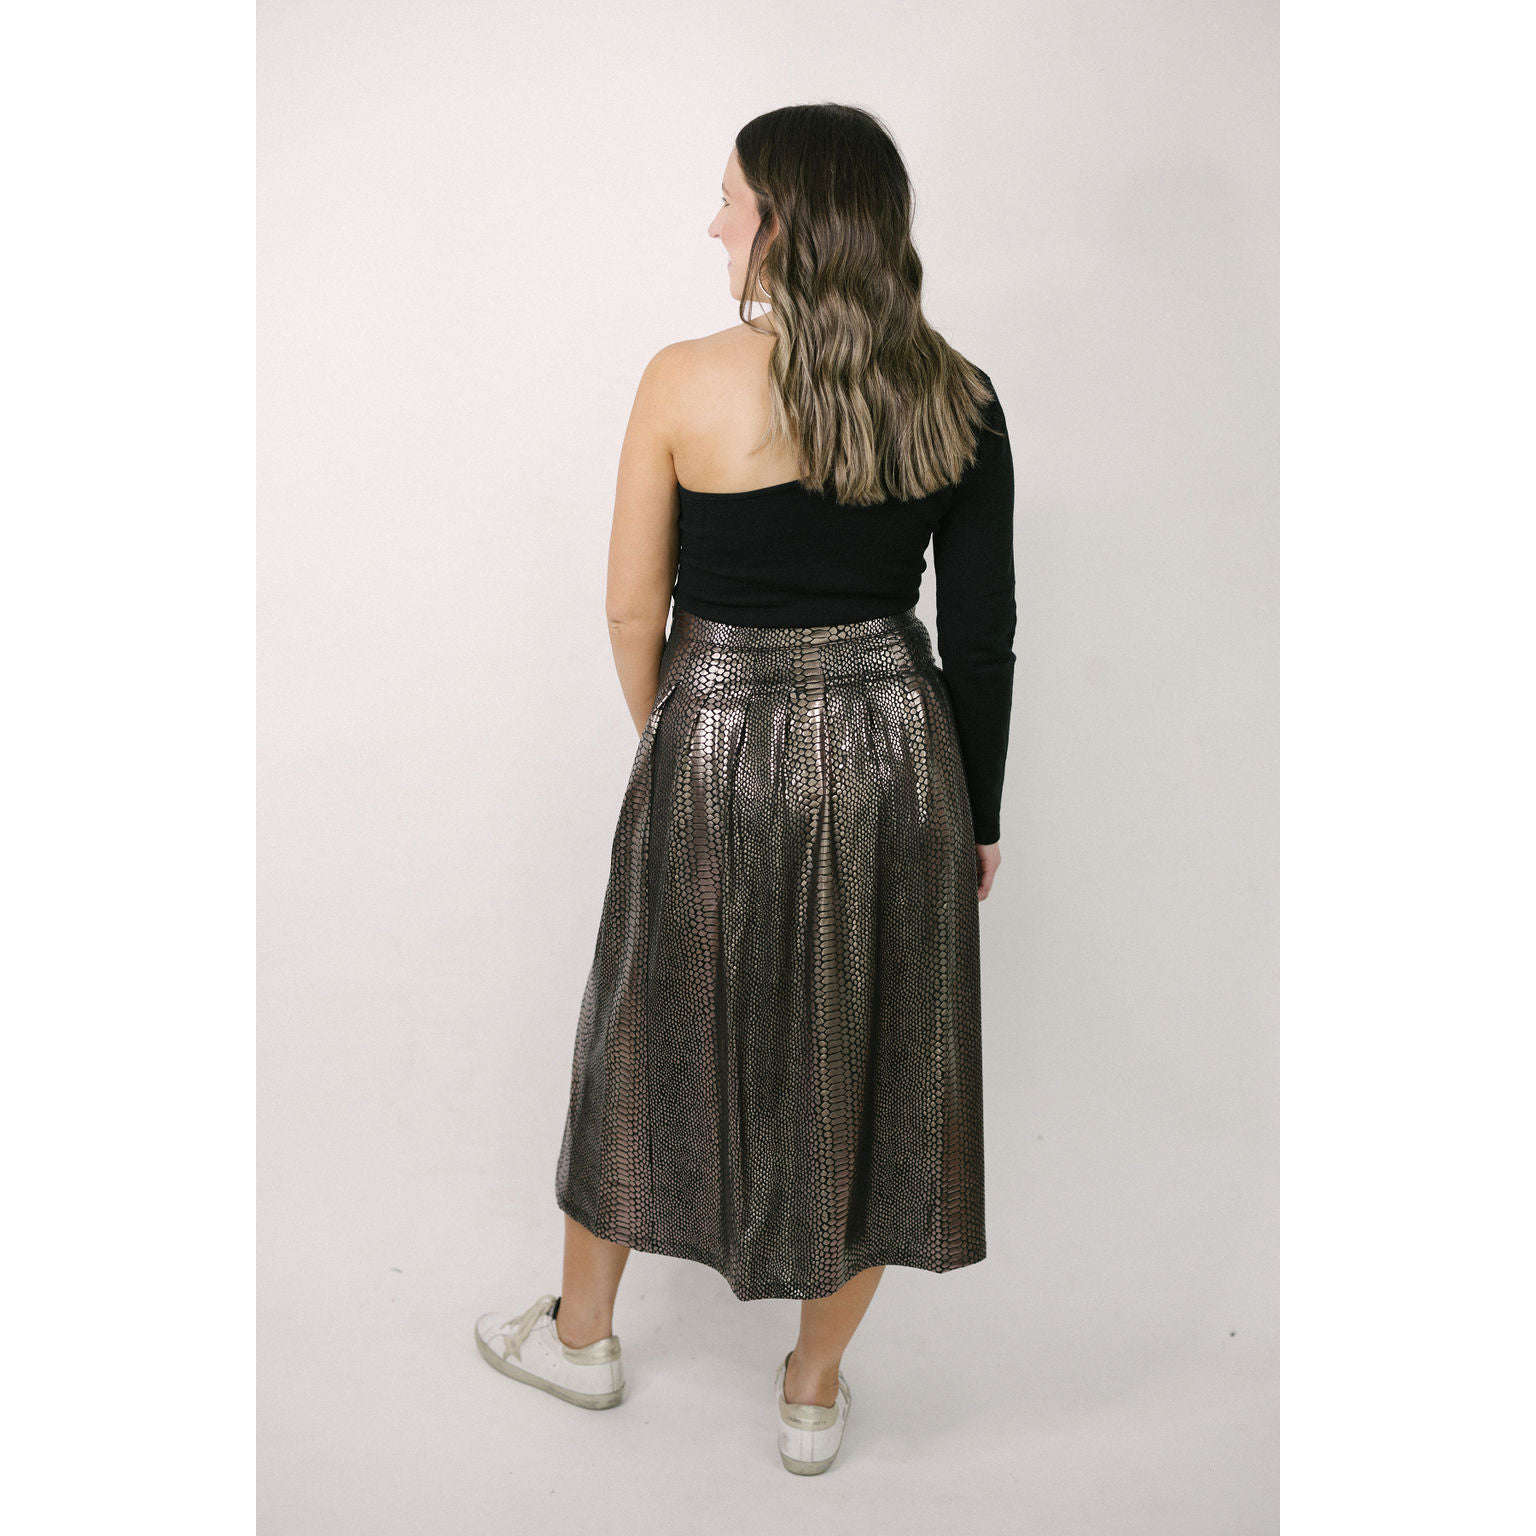 8.28 Boutique:Molly Bracken,Molly Bracken Midi Skirt in Black and Gold,skirt